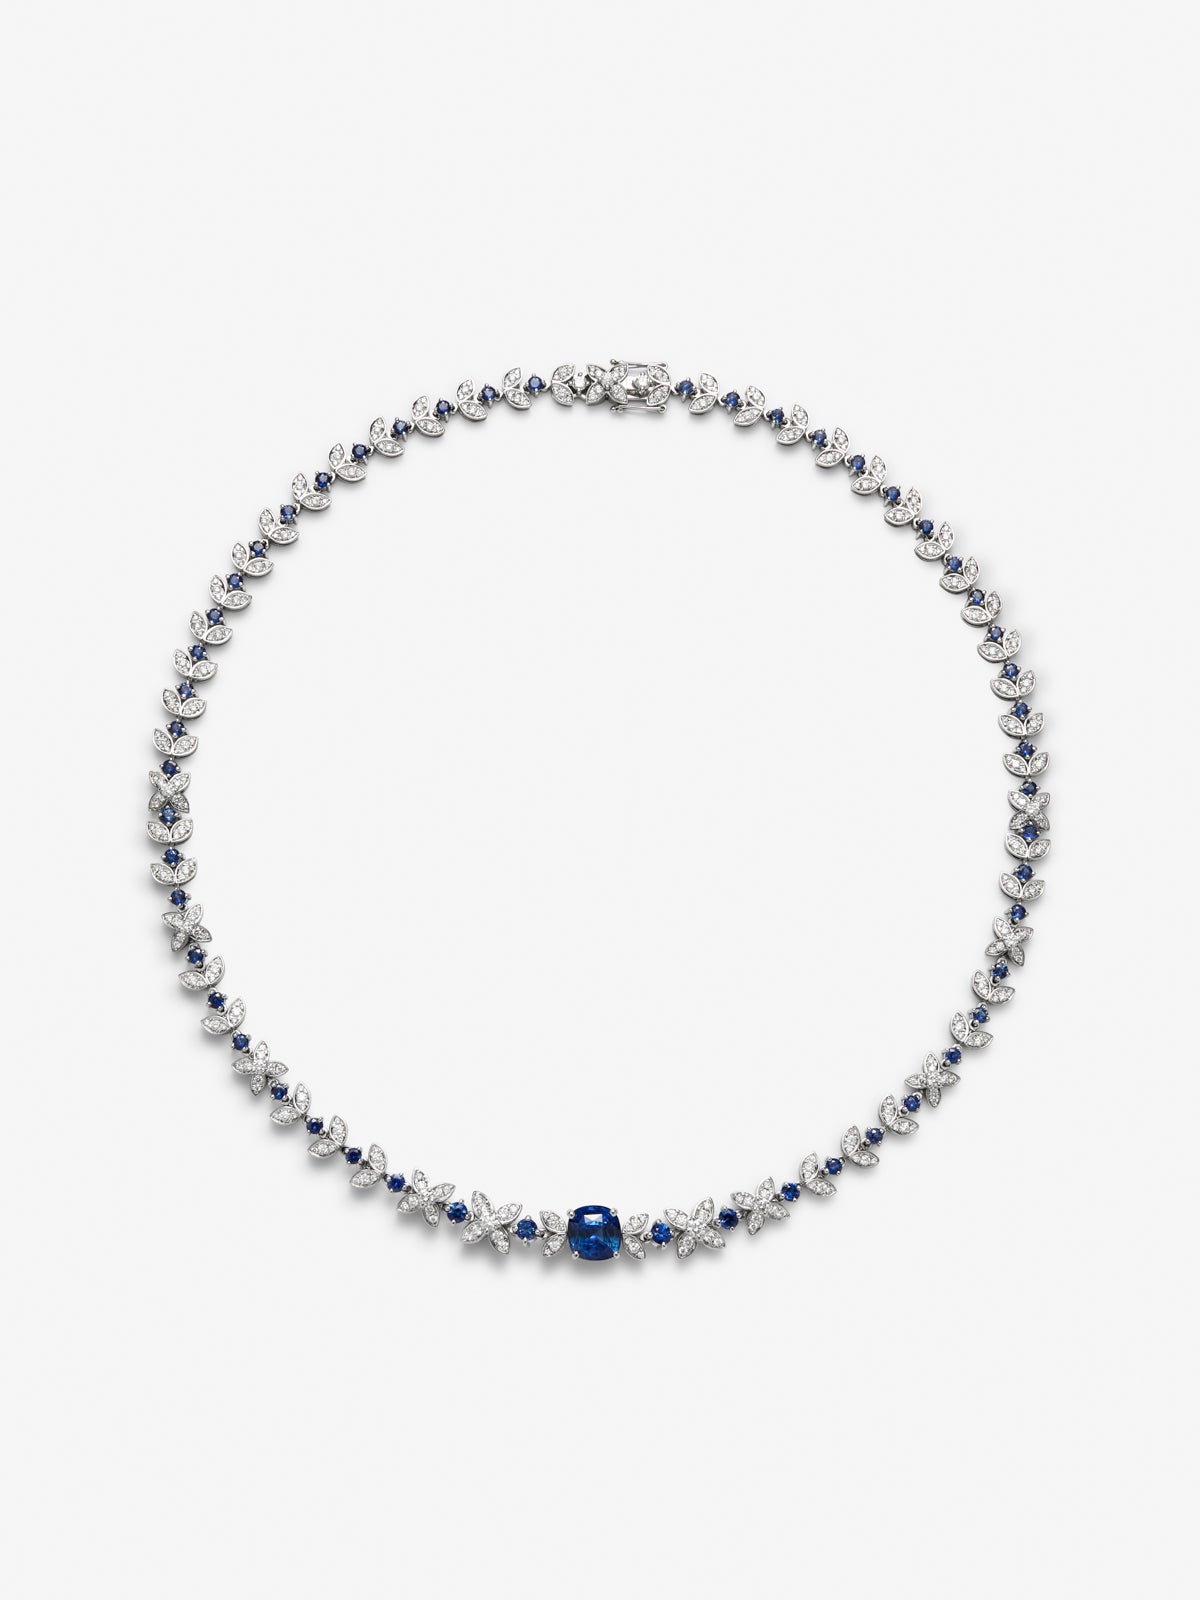 Collar de oro blanco de 18K con zafiro azul cornflower en talla cushion de 3,51 cts, zafiros azules en talla brillante de 4,32 cts y diamantes en talla brillante de 3,58 cts